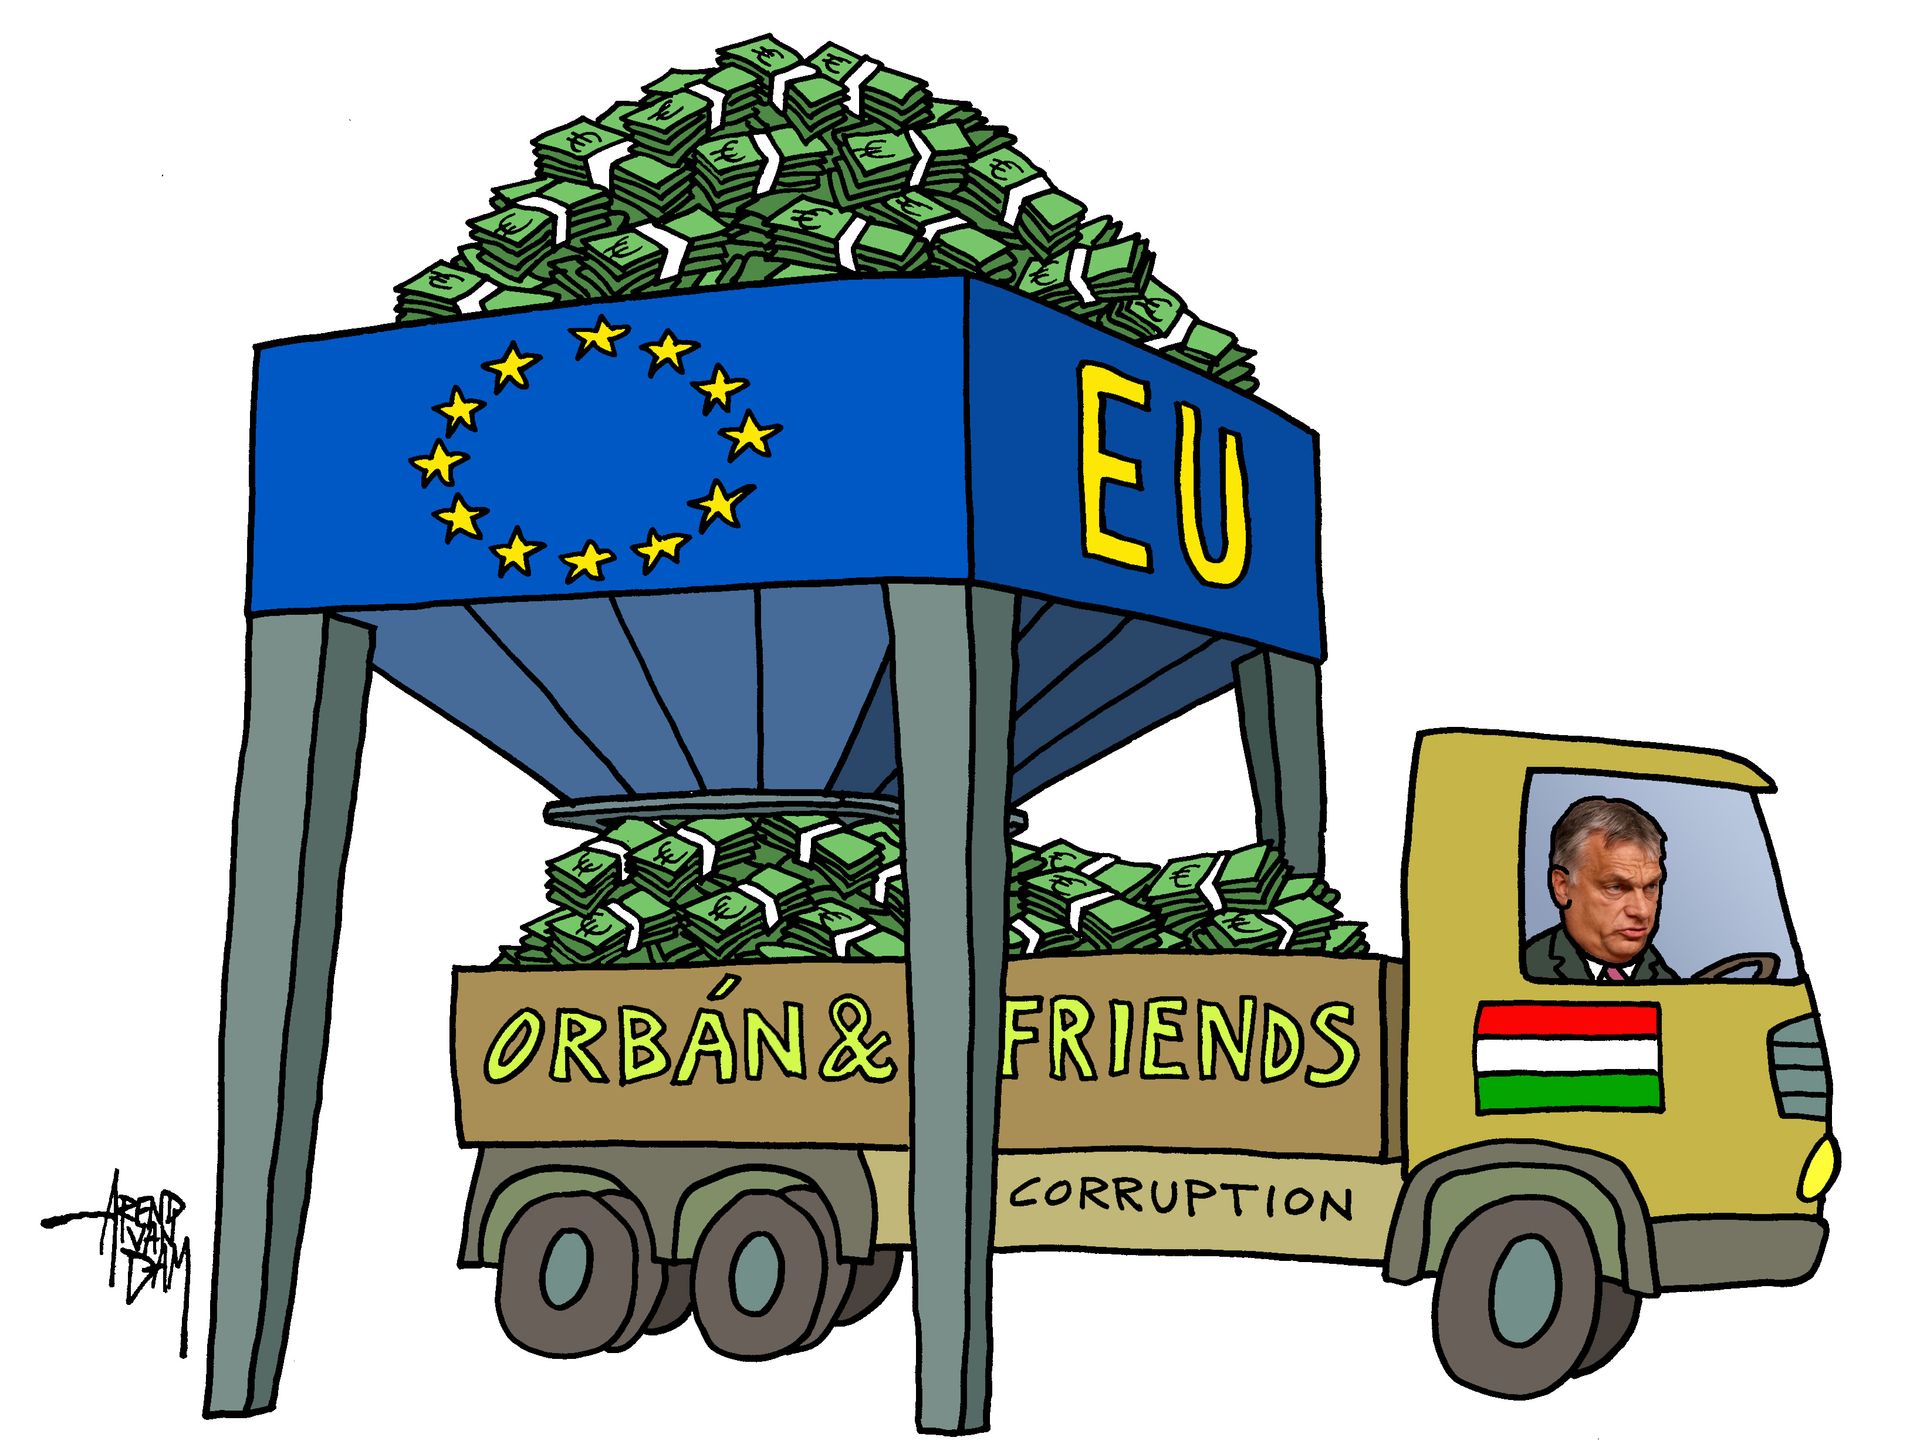 Orbán&friends